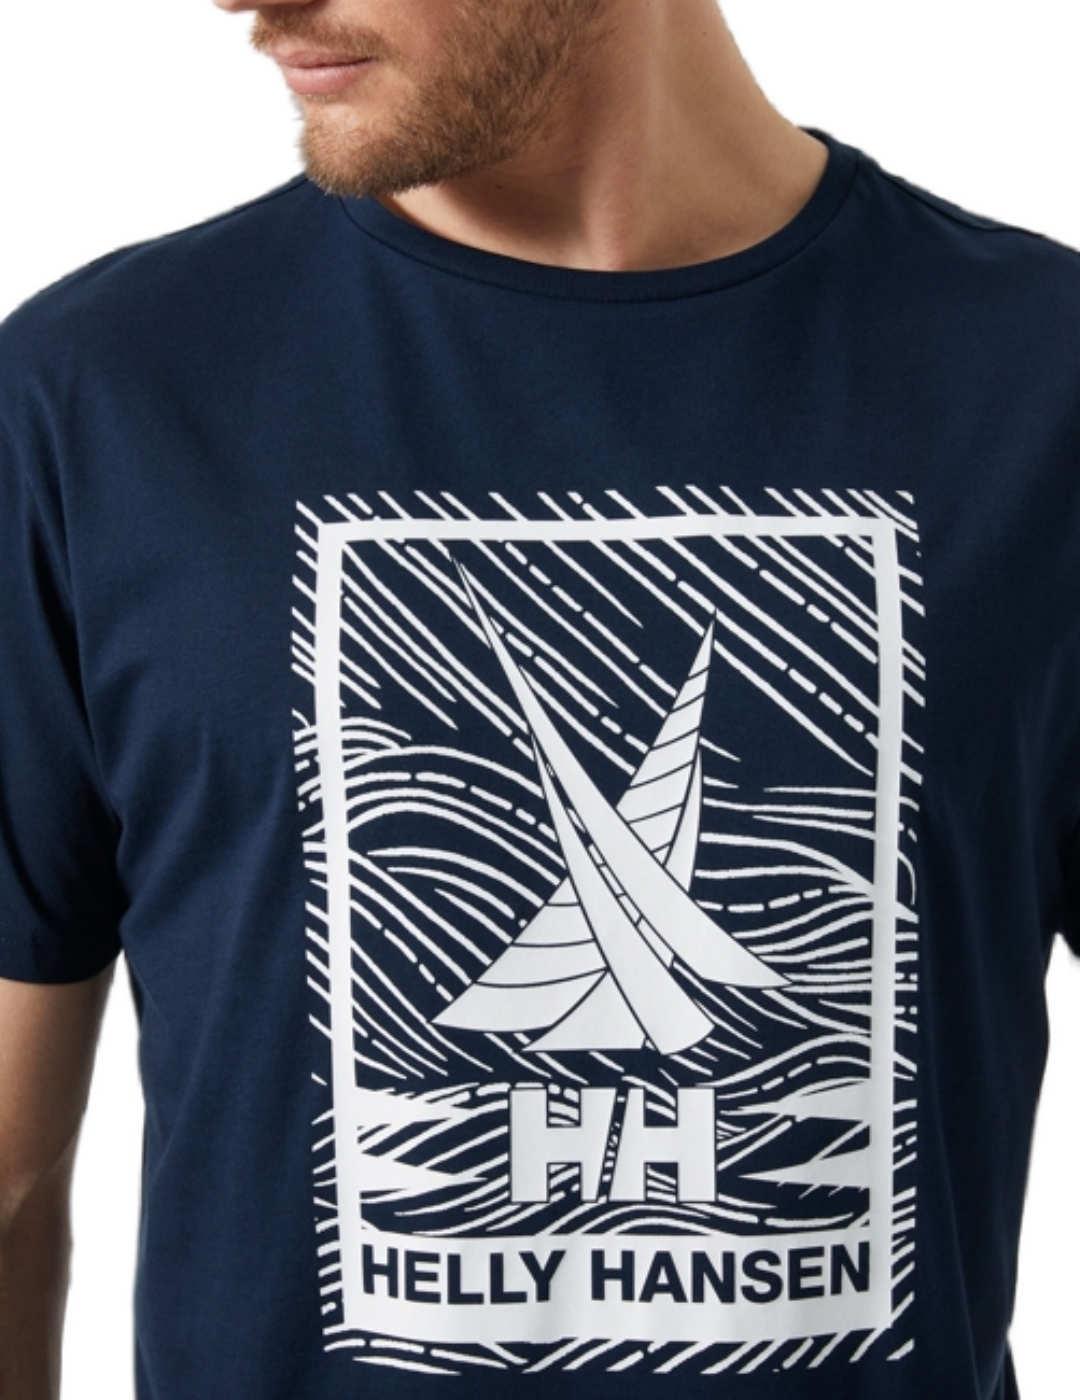 Camiseta Helly Hansen marino logo barco manga corta hombre